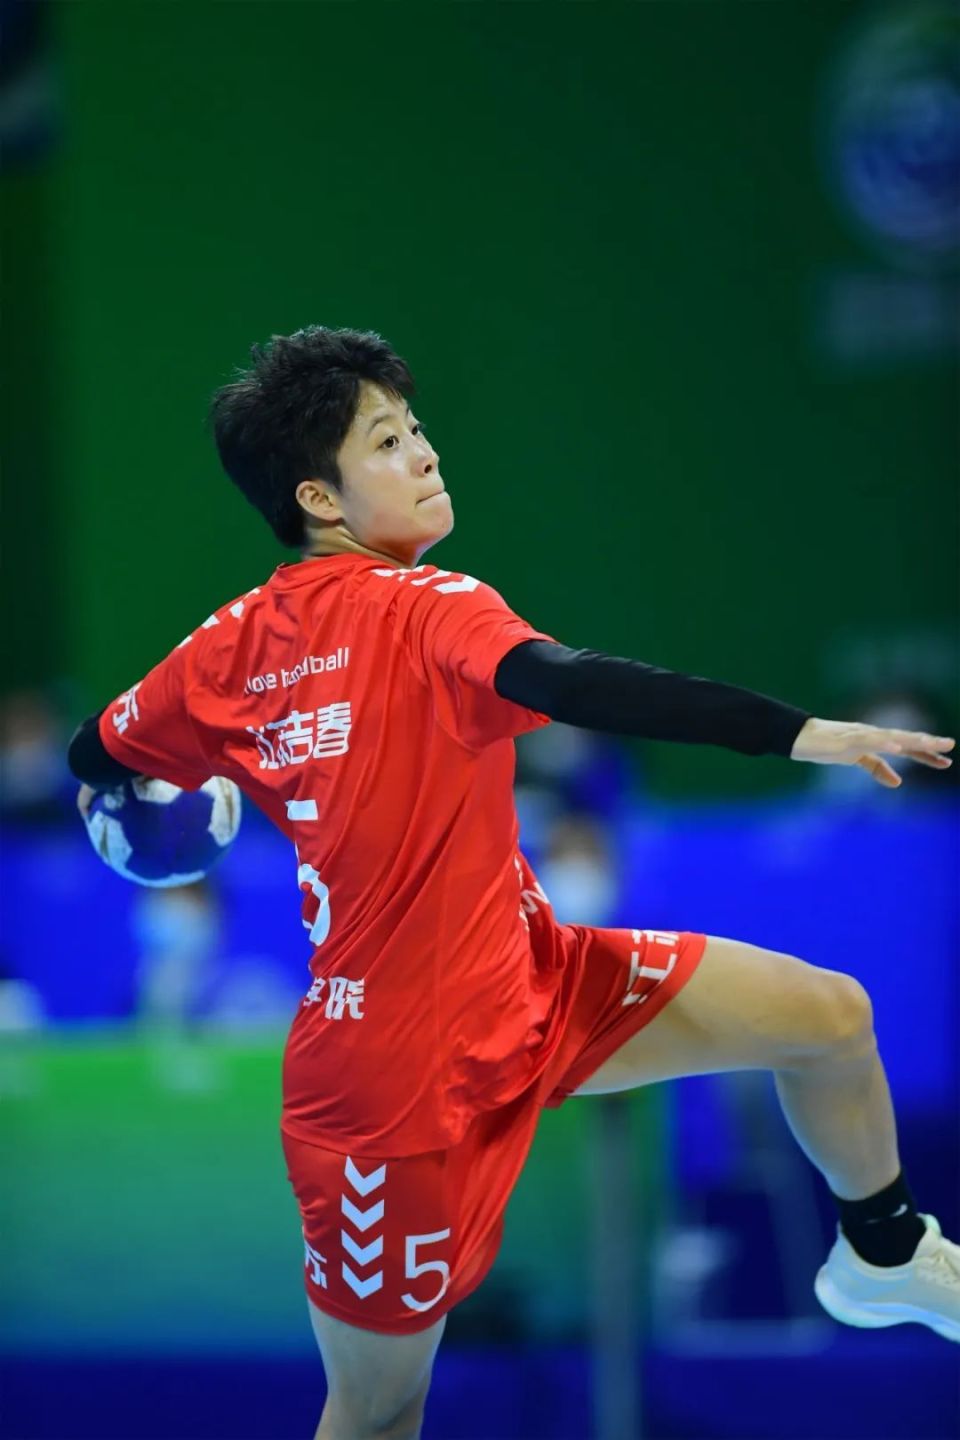 手球:张海侠,庄红艳(女子手球)7名常州籍运动员名单共将参加8个大项的